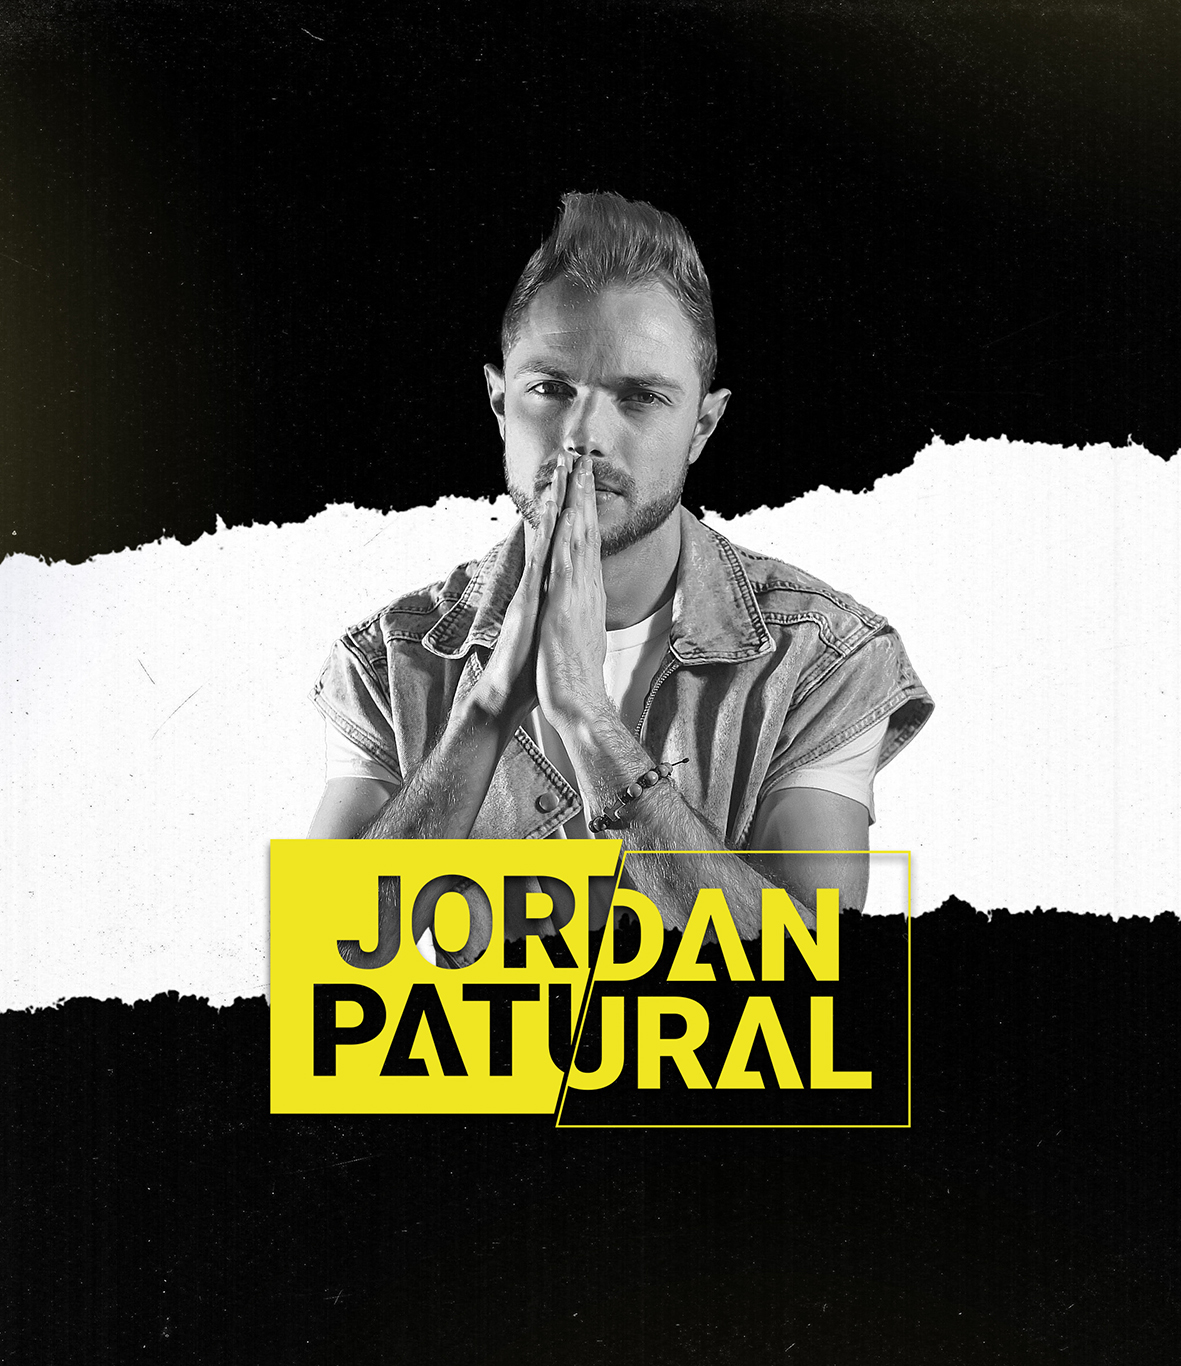 Jordan Patural